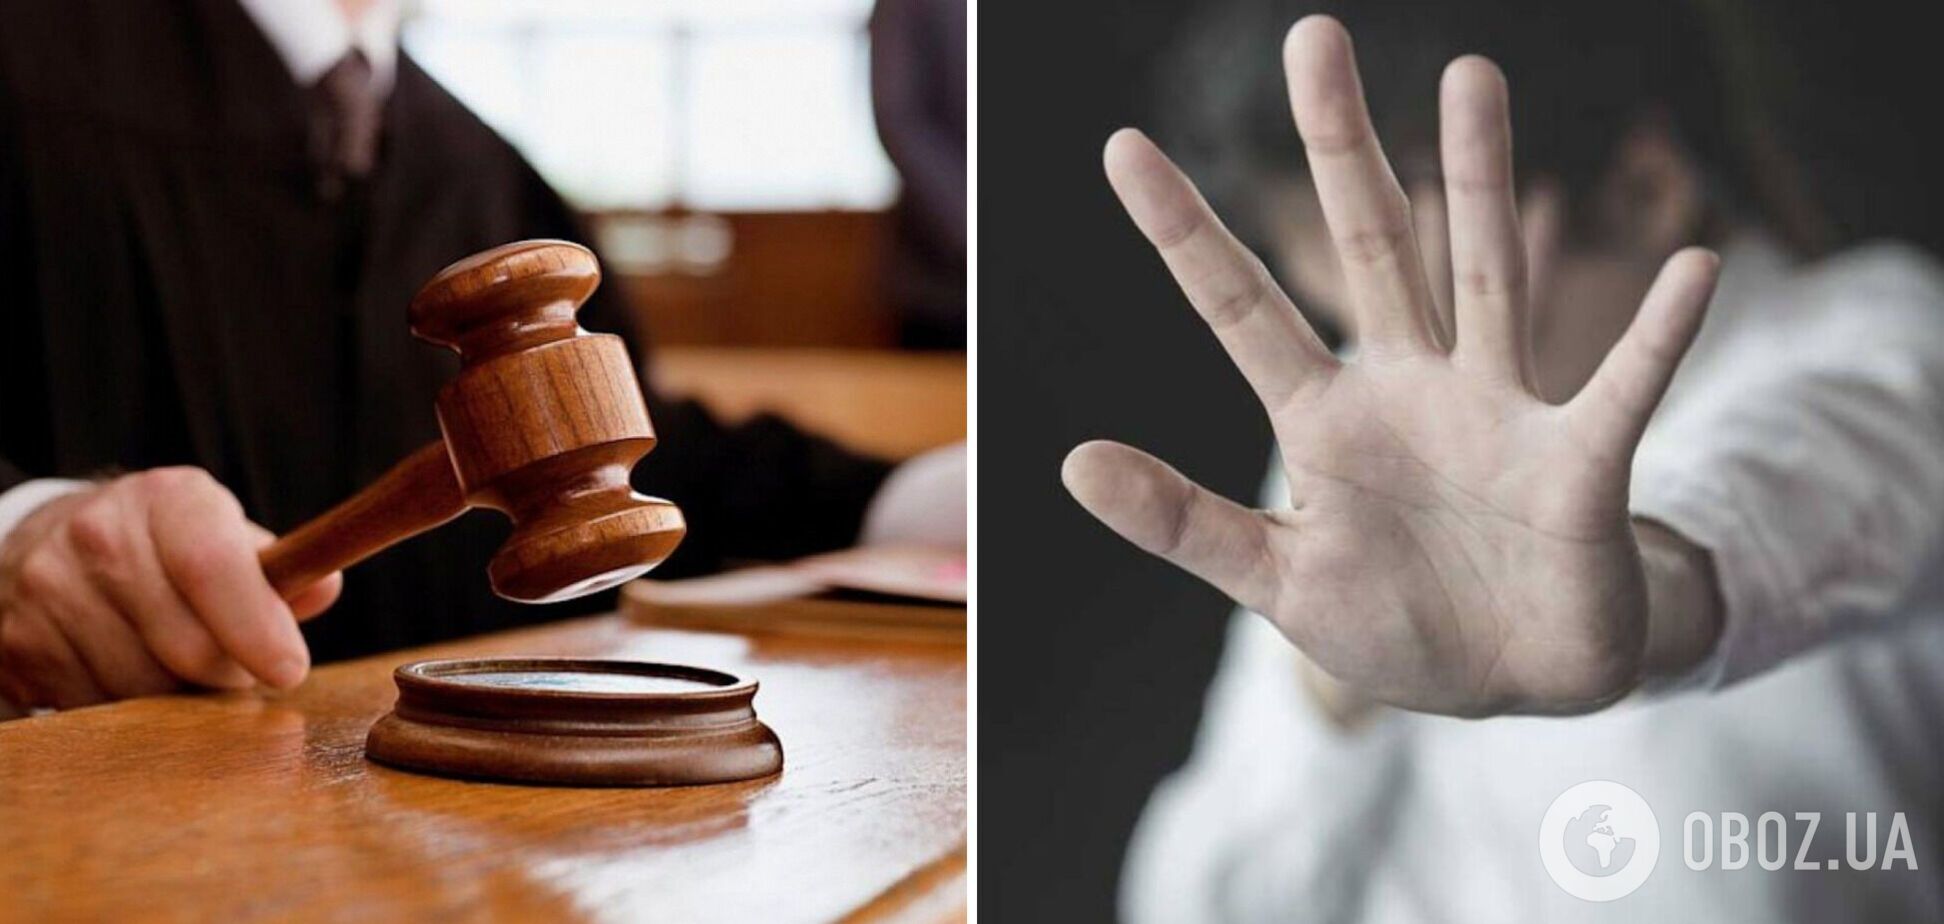 Изнасилование девочки на Закарпатье: прокуратура обжаловала скандальный приговор, ВСП проверит судью